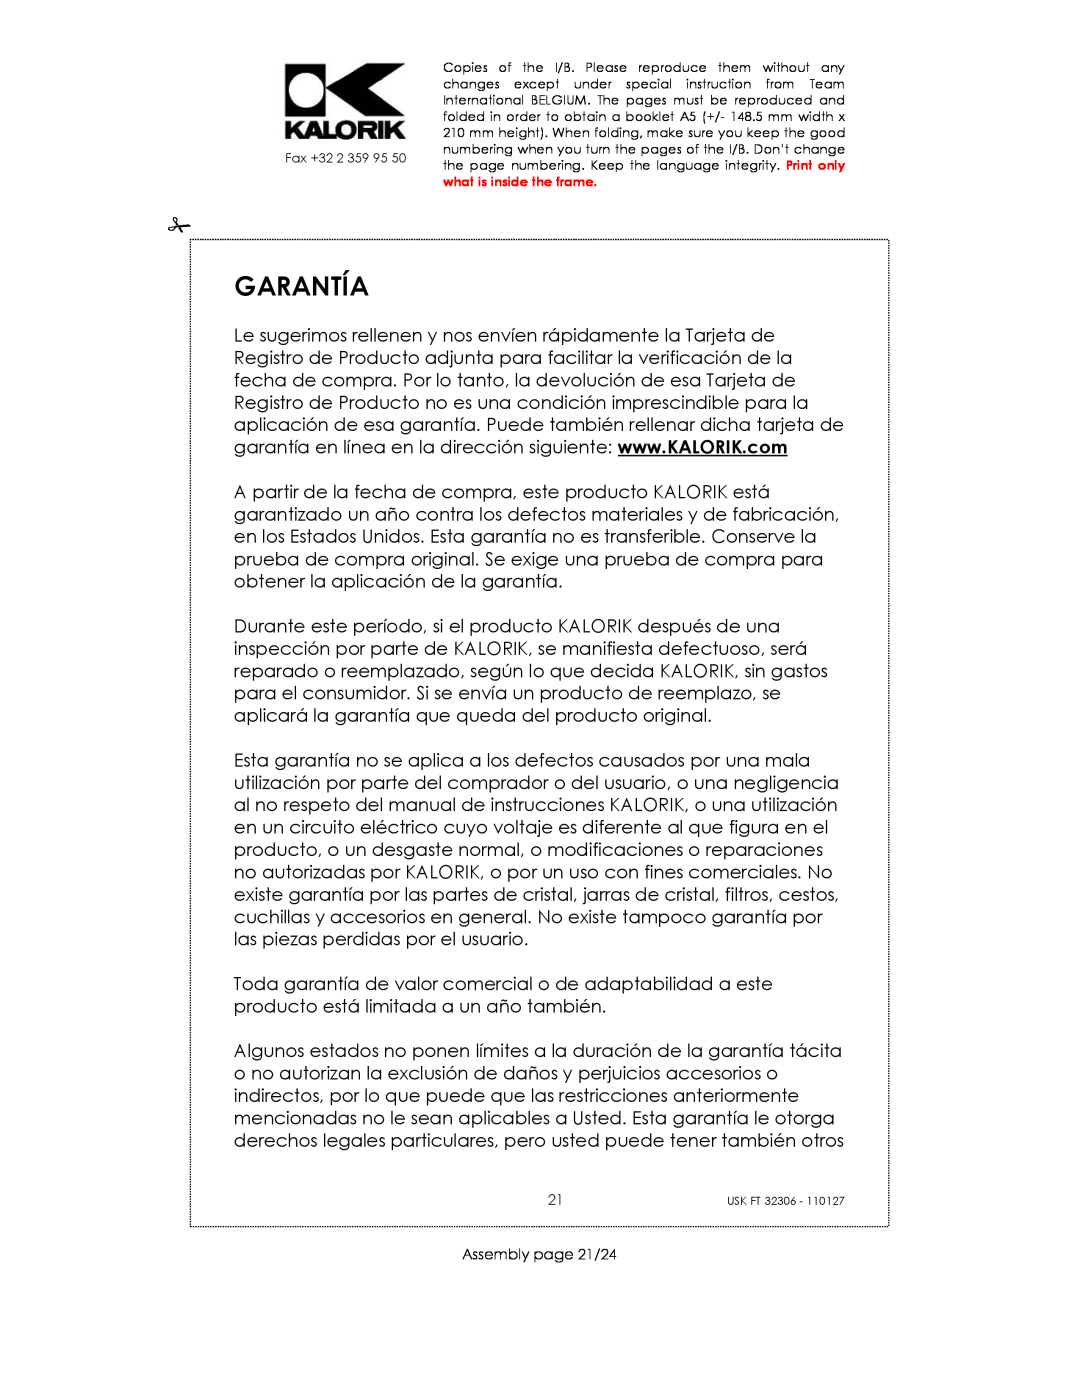 Kalorik USK FT 32306 manual Garantía, Assembly page 21/24 